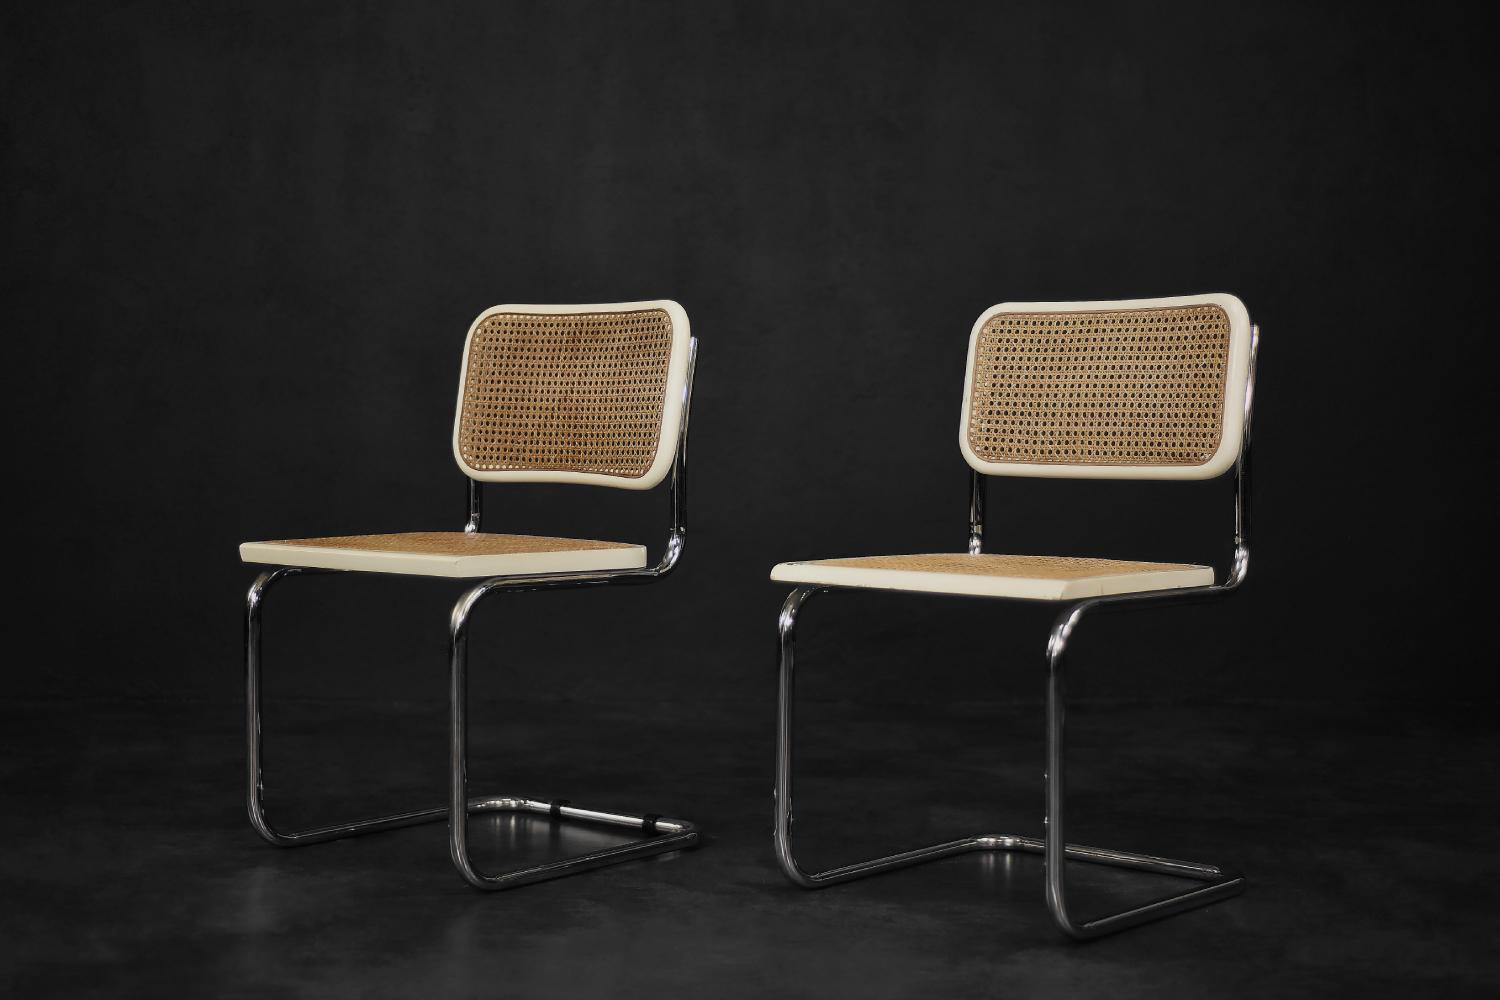 Cet ensemble de deux chaises a été fabriqué en Italie dans la seconde moitié du XXe siècle. Les chaises sont inspirées du célèbre modèle Cesca B32. En 1928, le Cesca, conçu par Marcel Breuer, a été le premier siège canné du genre. Ce nom est un